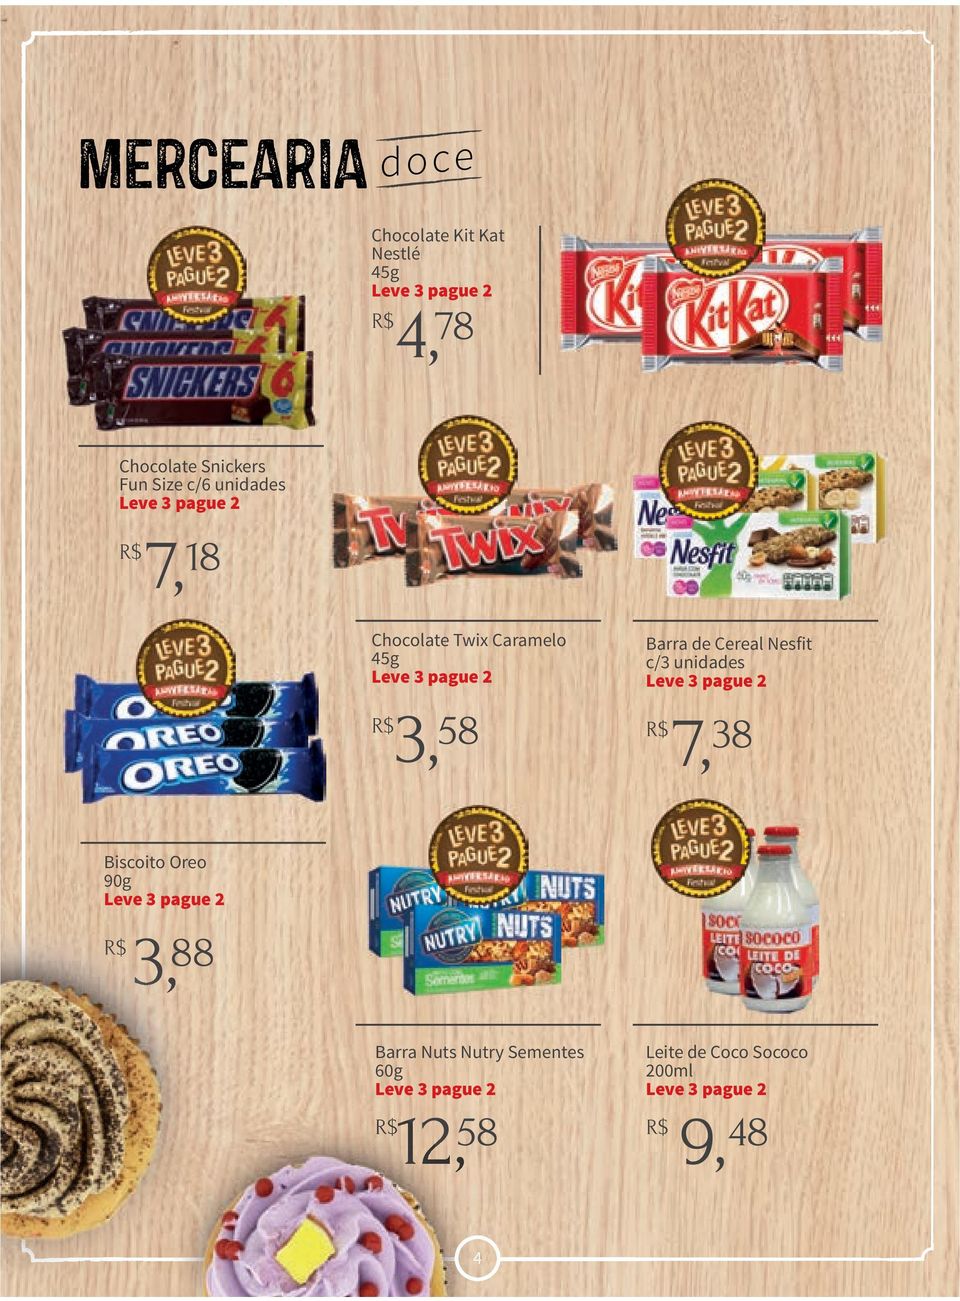 Perecíveis Chocolate Twix Caramelo 45g R$3, 58 Barra de Cereal Nesfit c/3 unidades R$7,